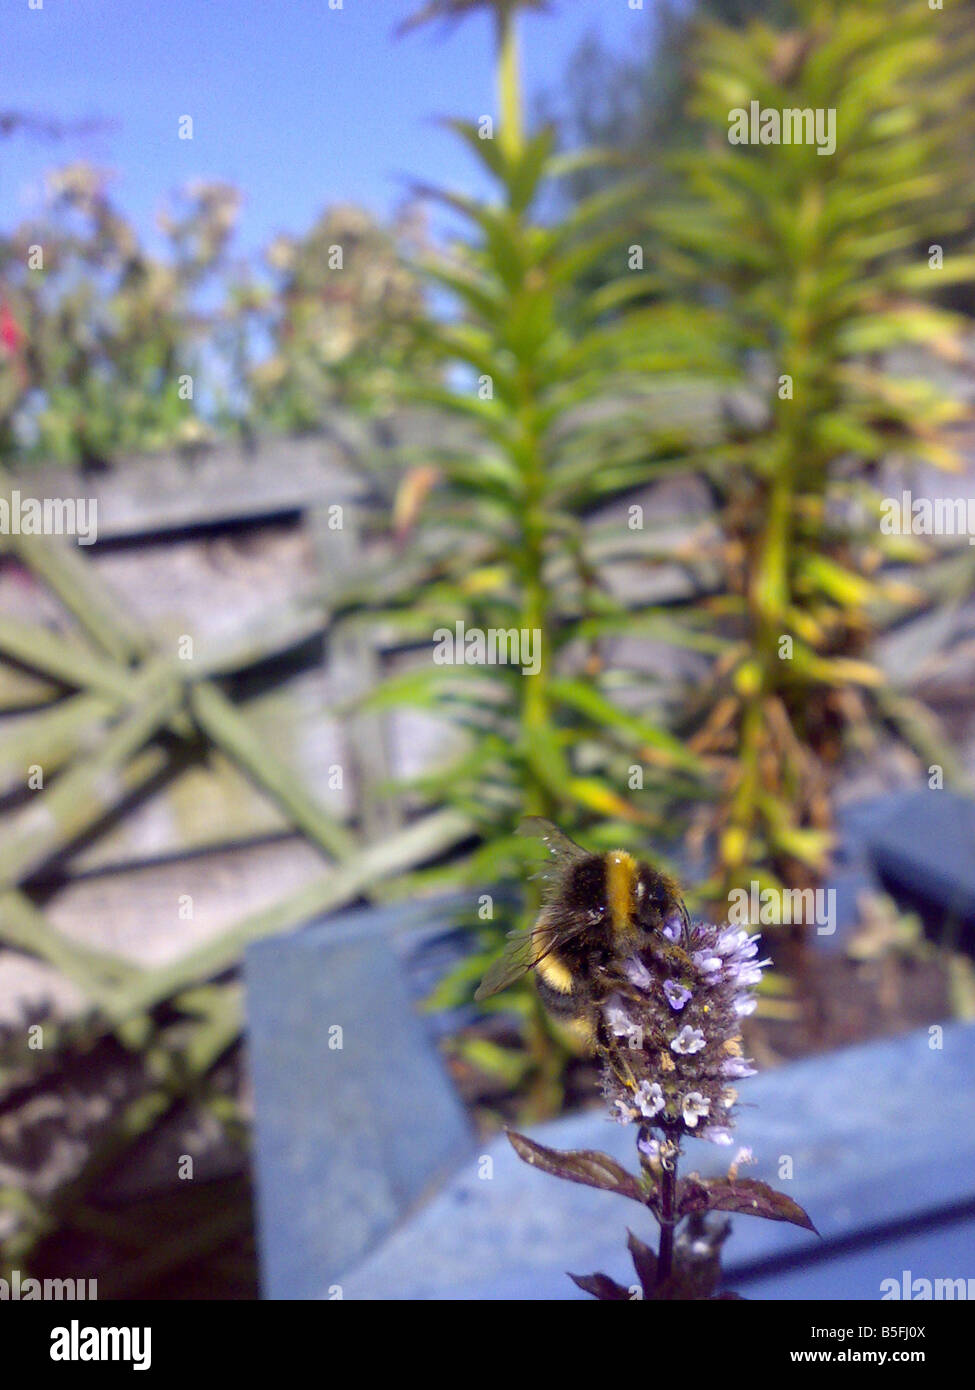 Miel Pollen bourdon insecte mouche d'été fleur recueillir buzz étamines plante de jardin travail libre de stripes recueillir ruche sting mint Banque D'Images